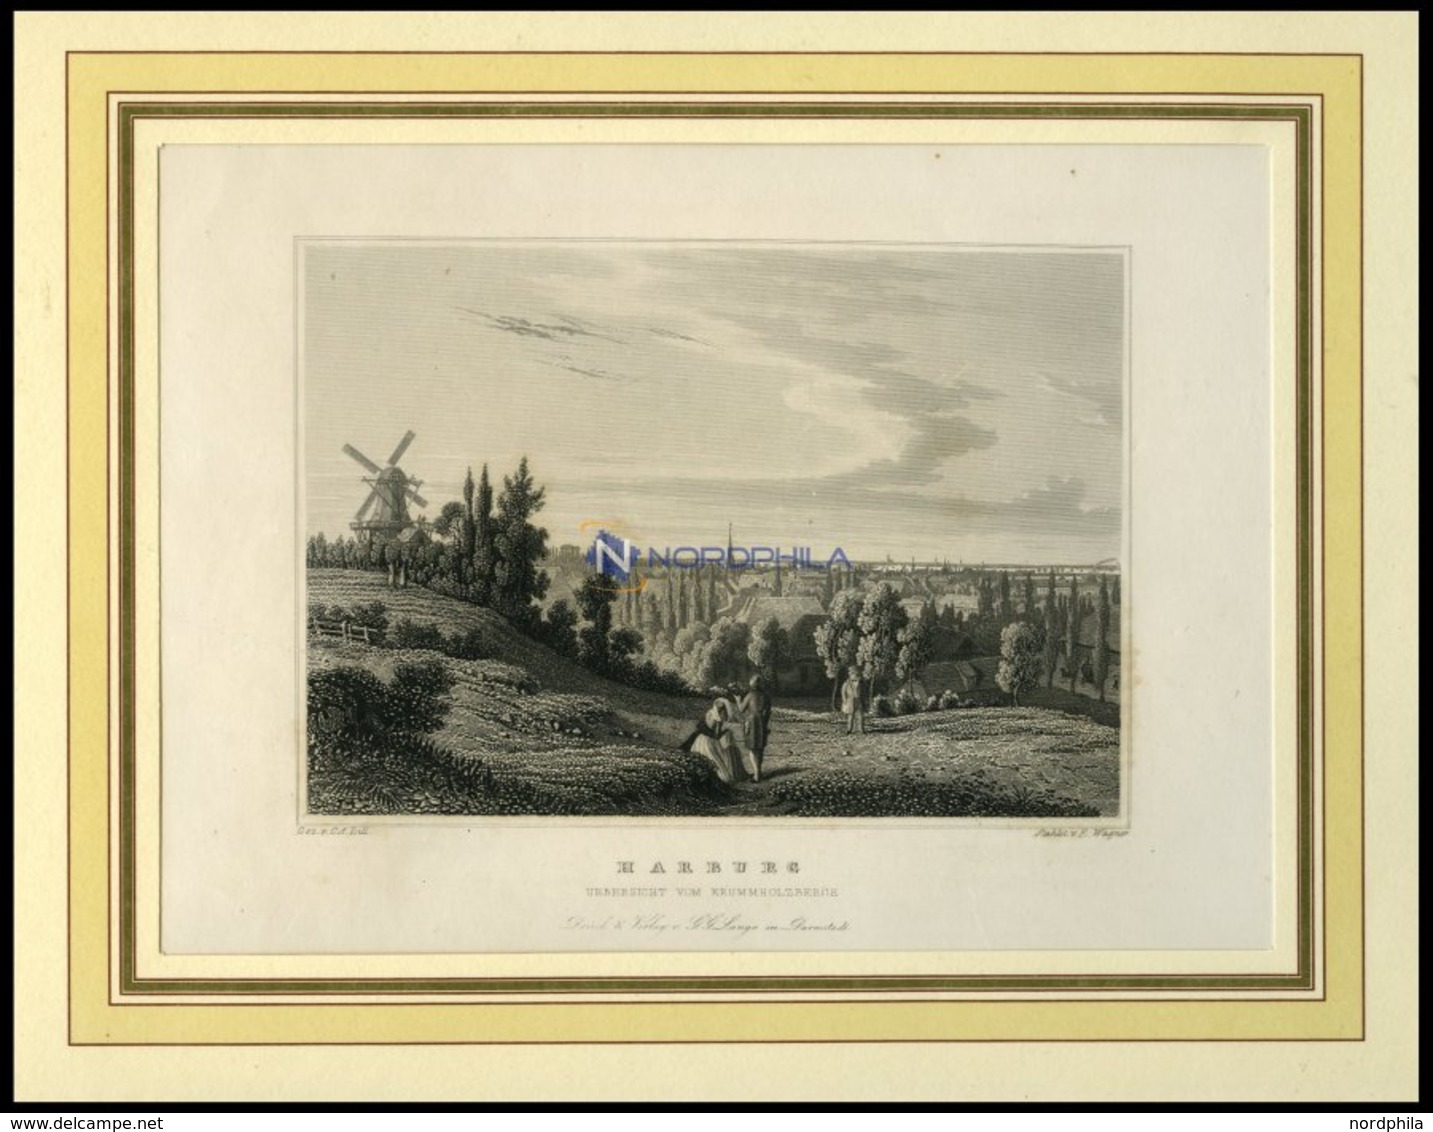 HAMBURG-HARBURG, Gesamtansicht Vom Krummholzberg, Stahlstich Von Lill/Wagner Um 1840 - Litografía